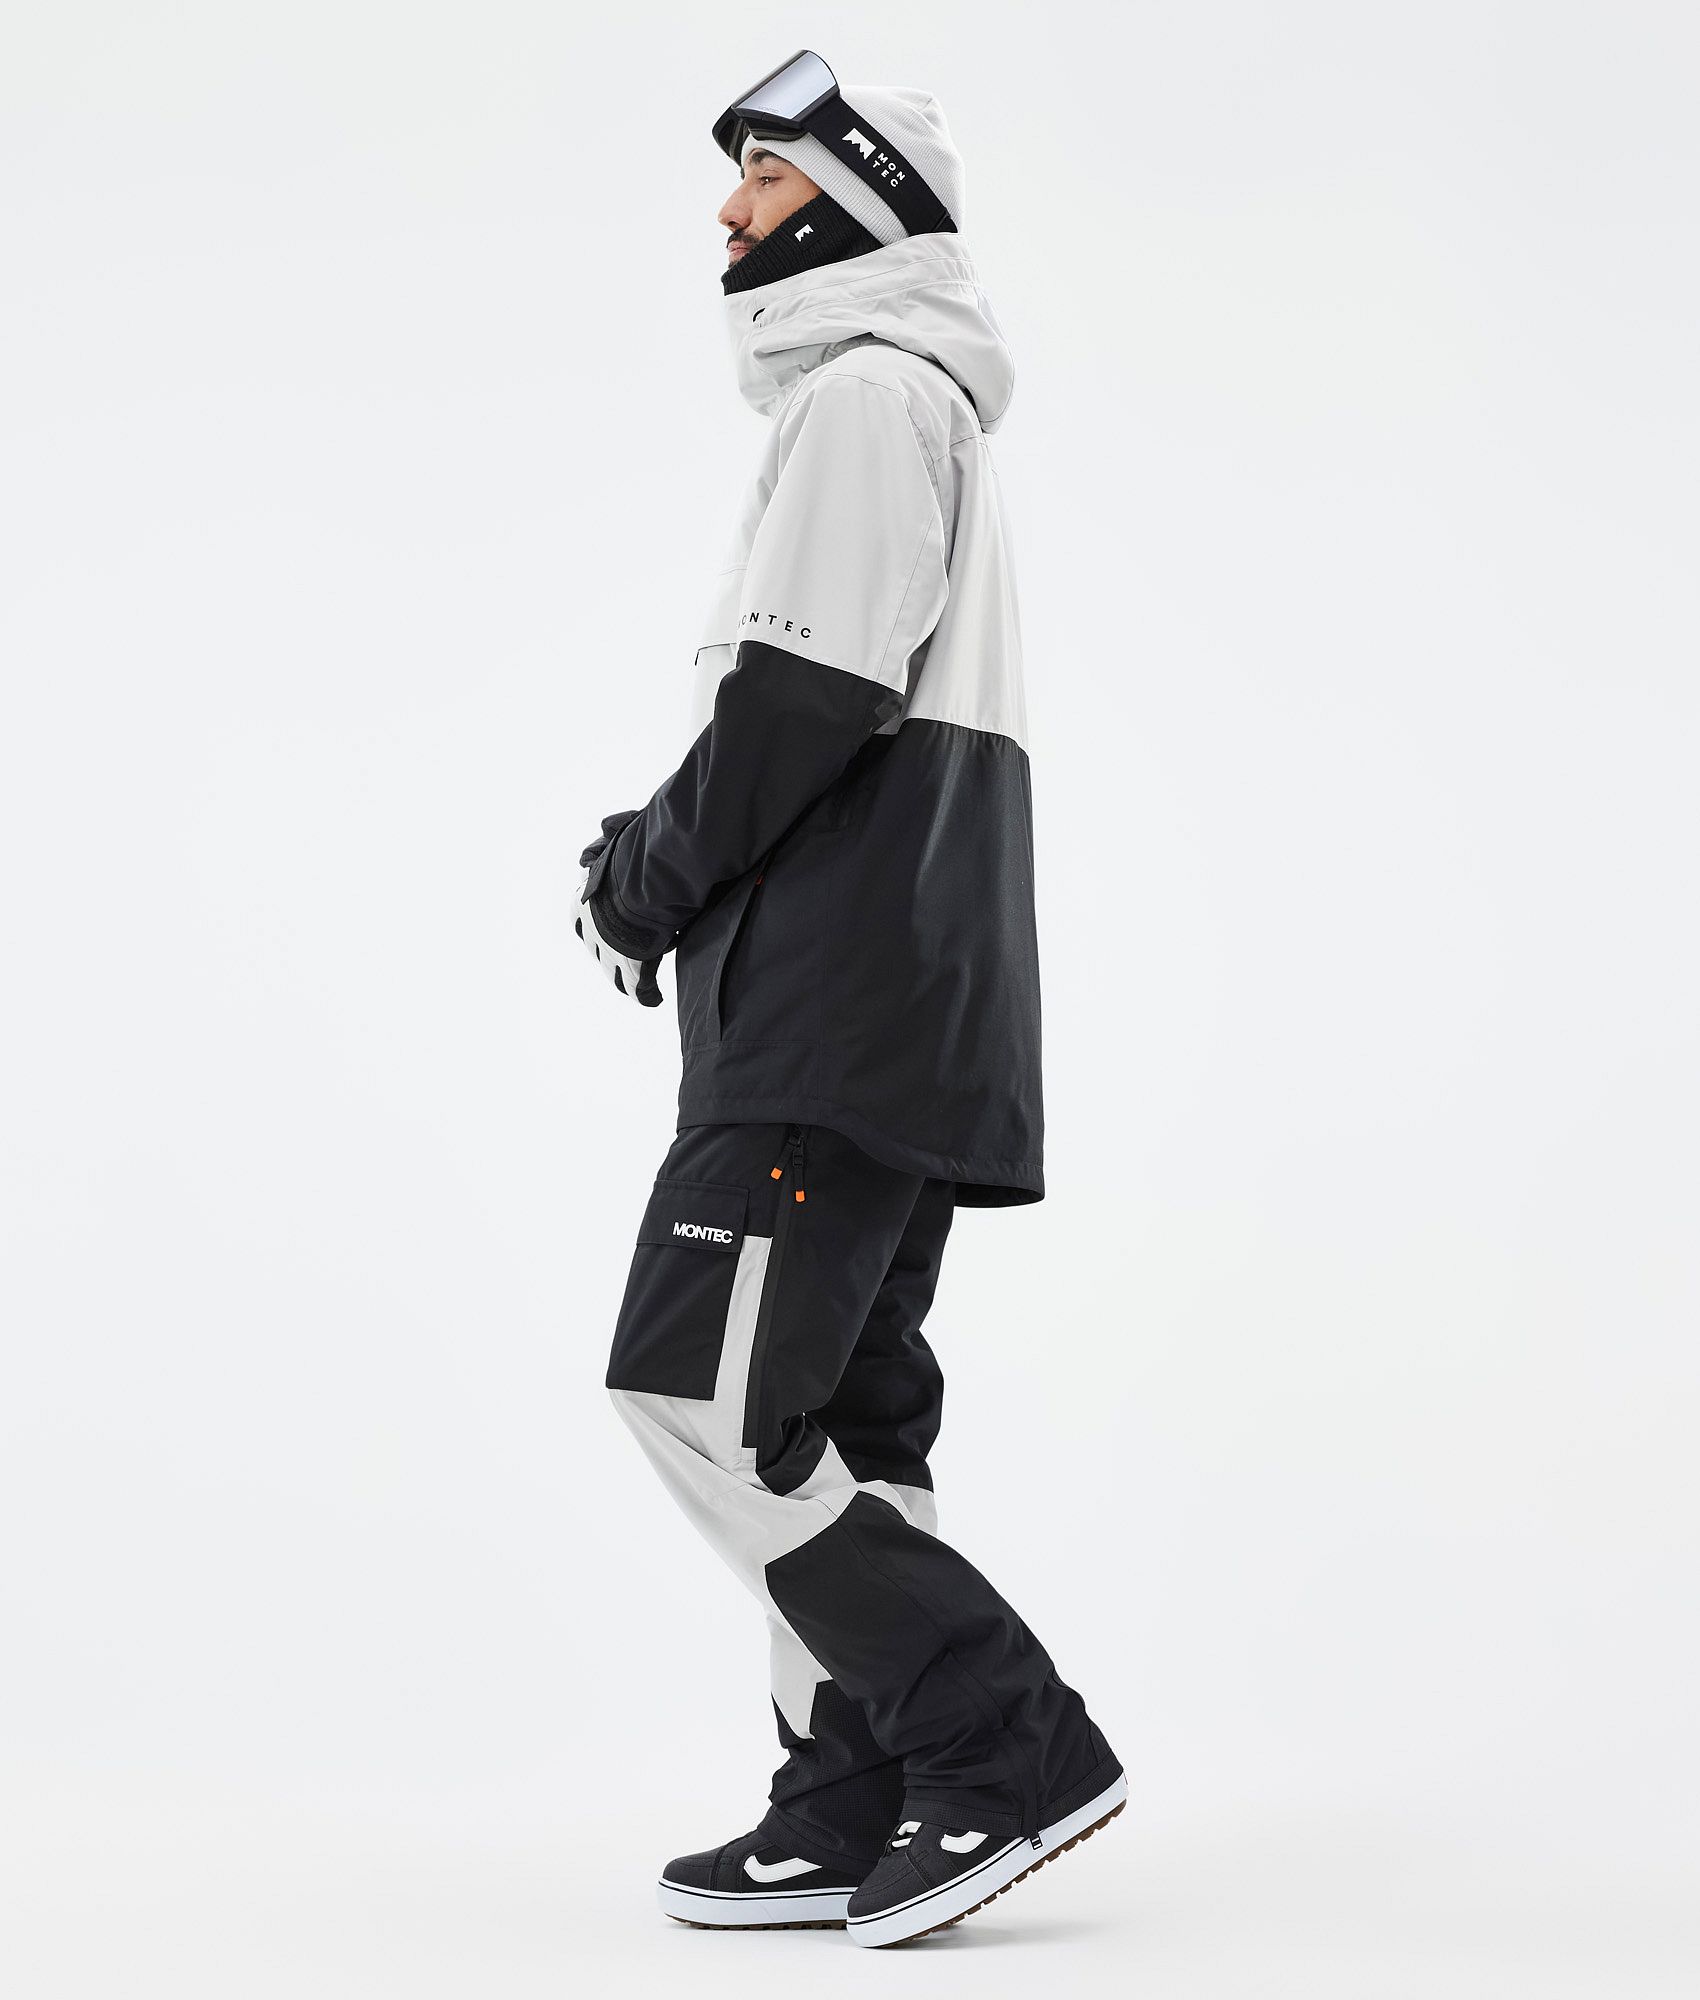 Montec Dune Men's Snowboard Jacket Light Grey/Black